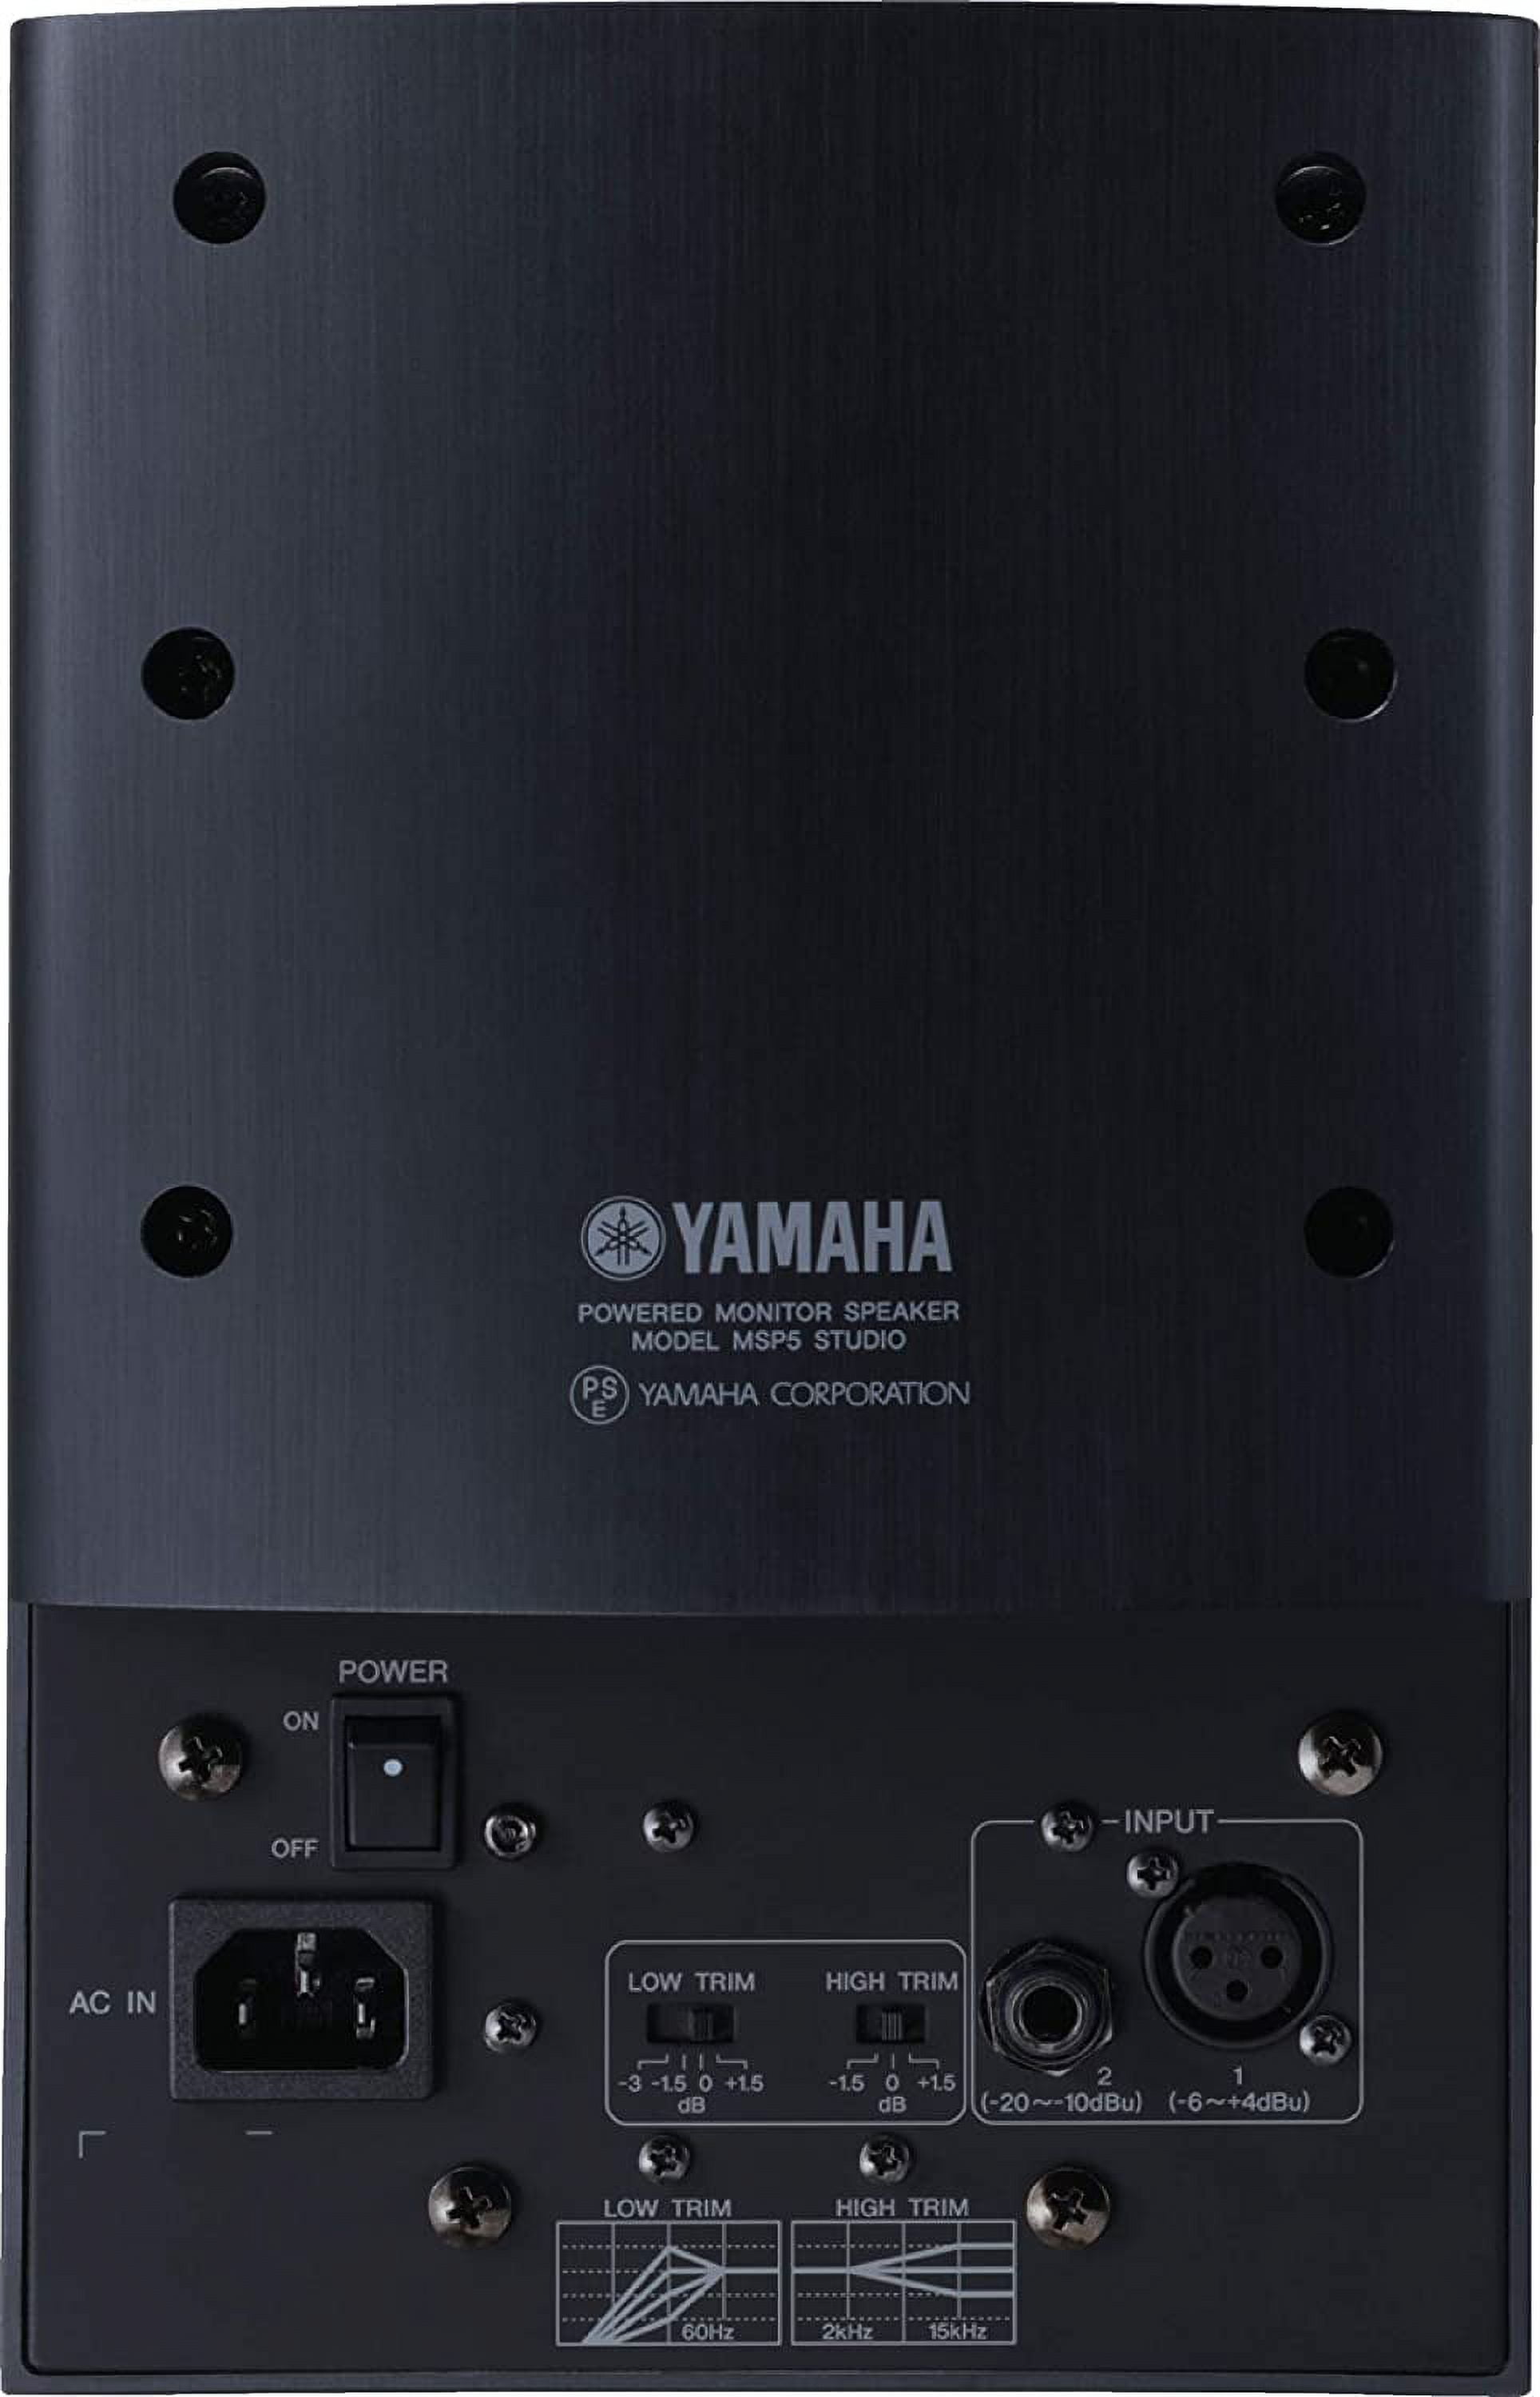 満点の 配信機器・PA機器・レコーディング機器 YAMAHA MSP5 配信機器 